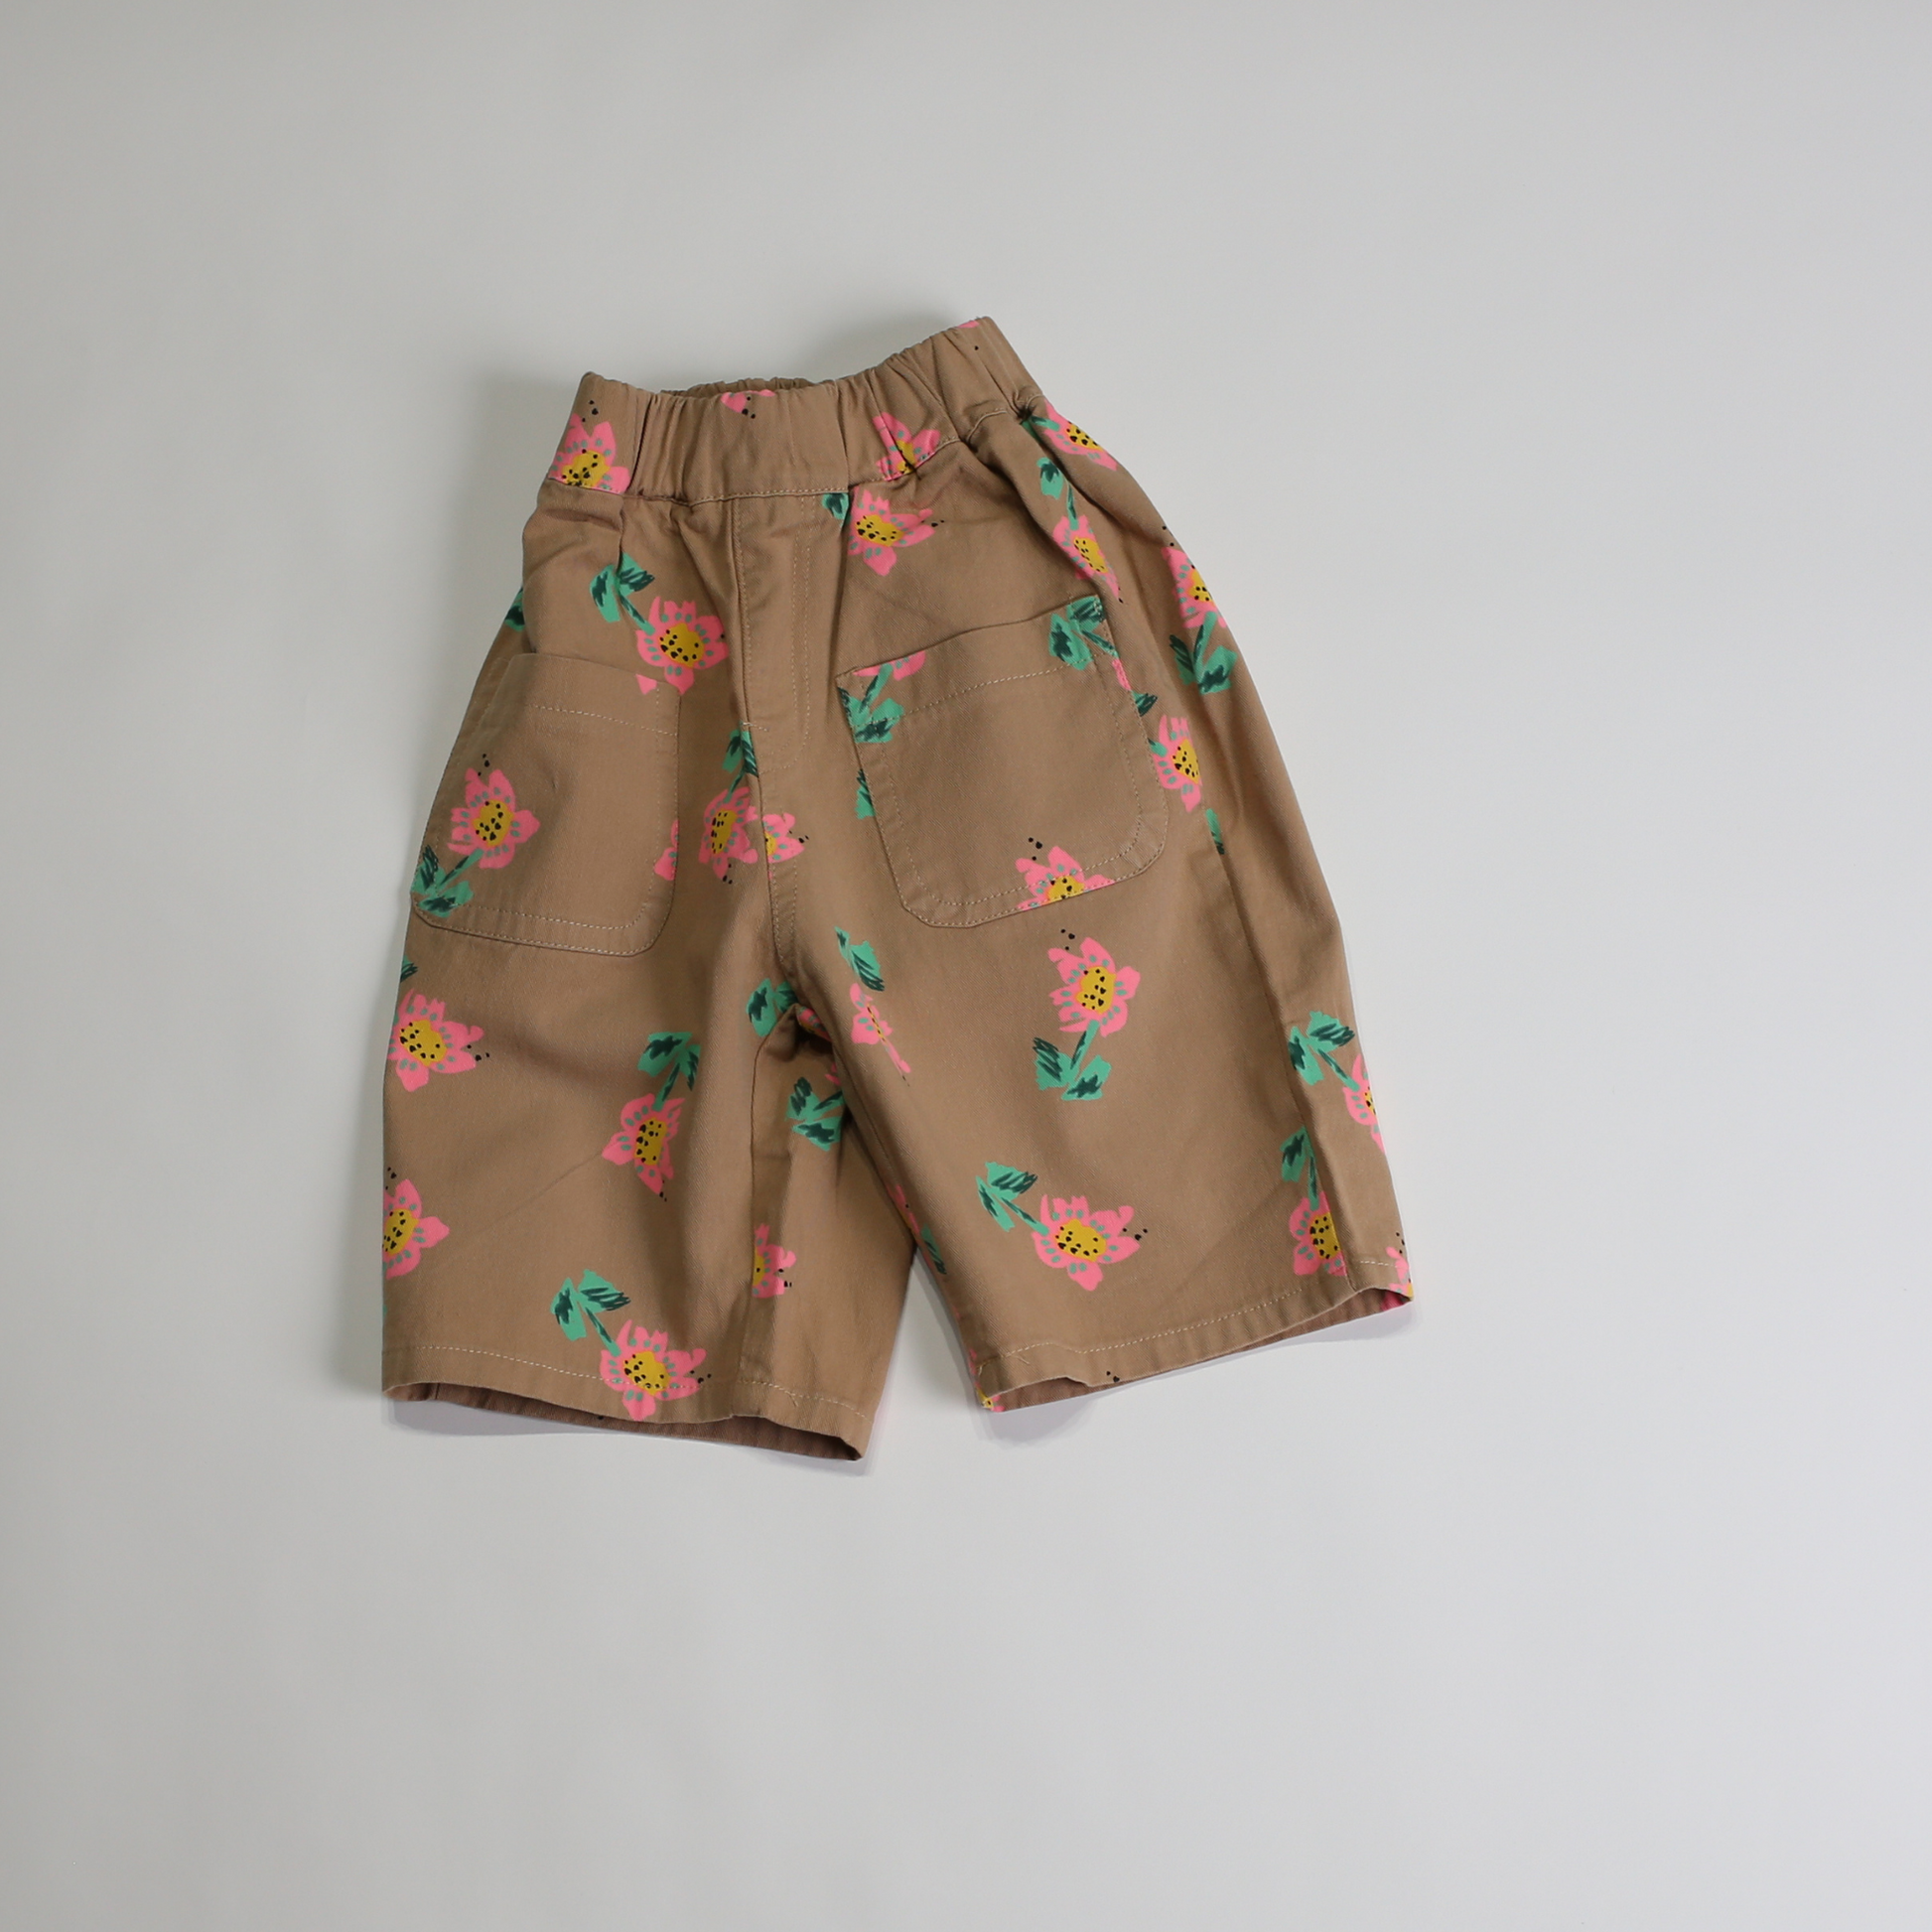 フラワー ポケット パンツ / flower pocket pants (こども服) - kids clothes shop GUZUGUZU